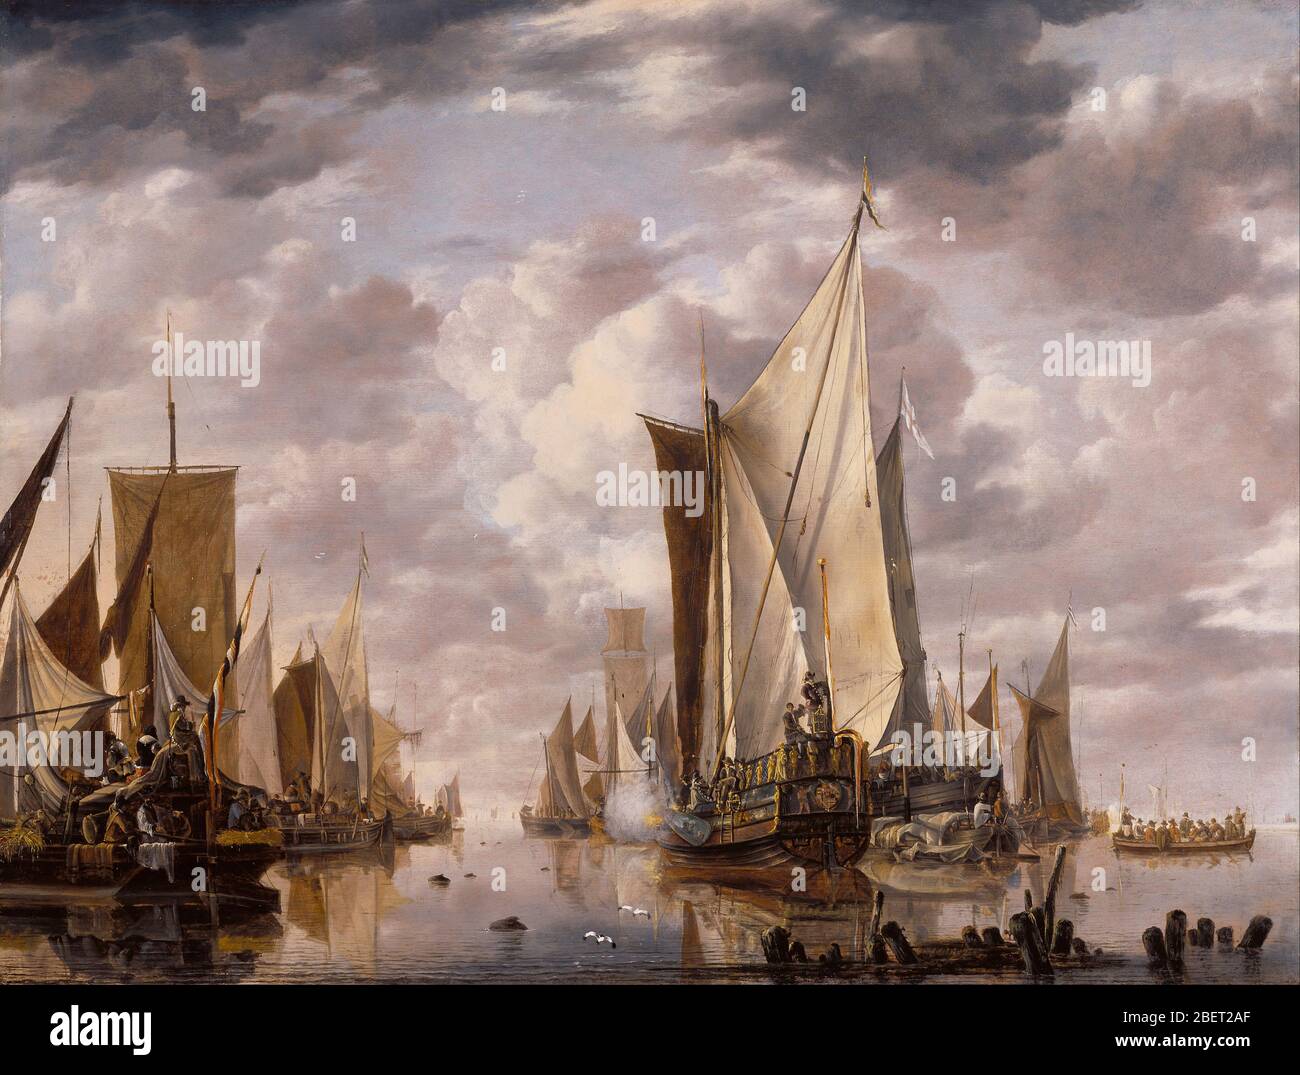 Peinture à l'huile du XVIIe siècle des grands navires de la Dutch East India Company au port néerlandais de Flushing. Banque D'Images